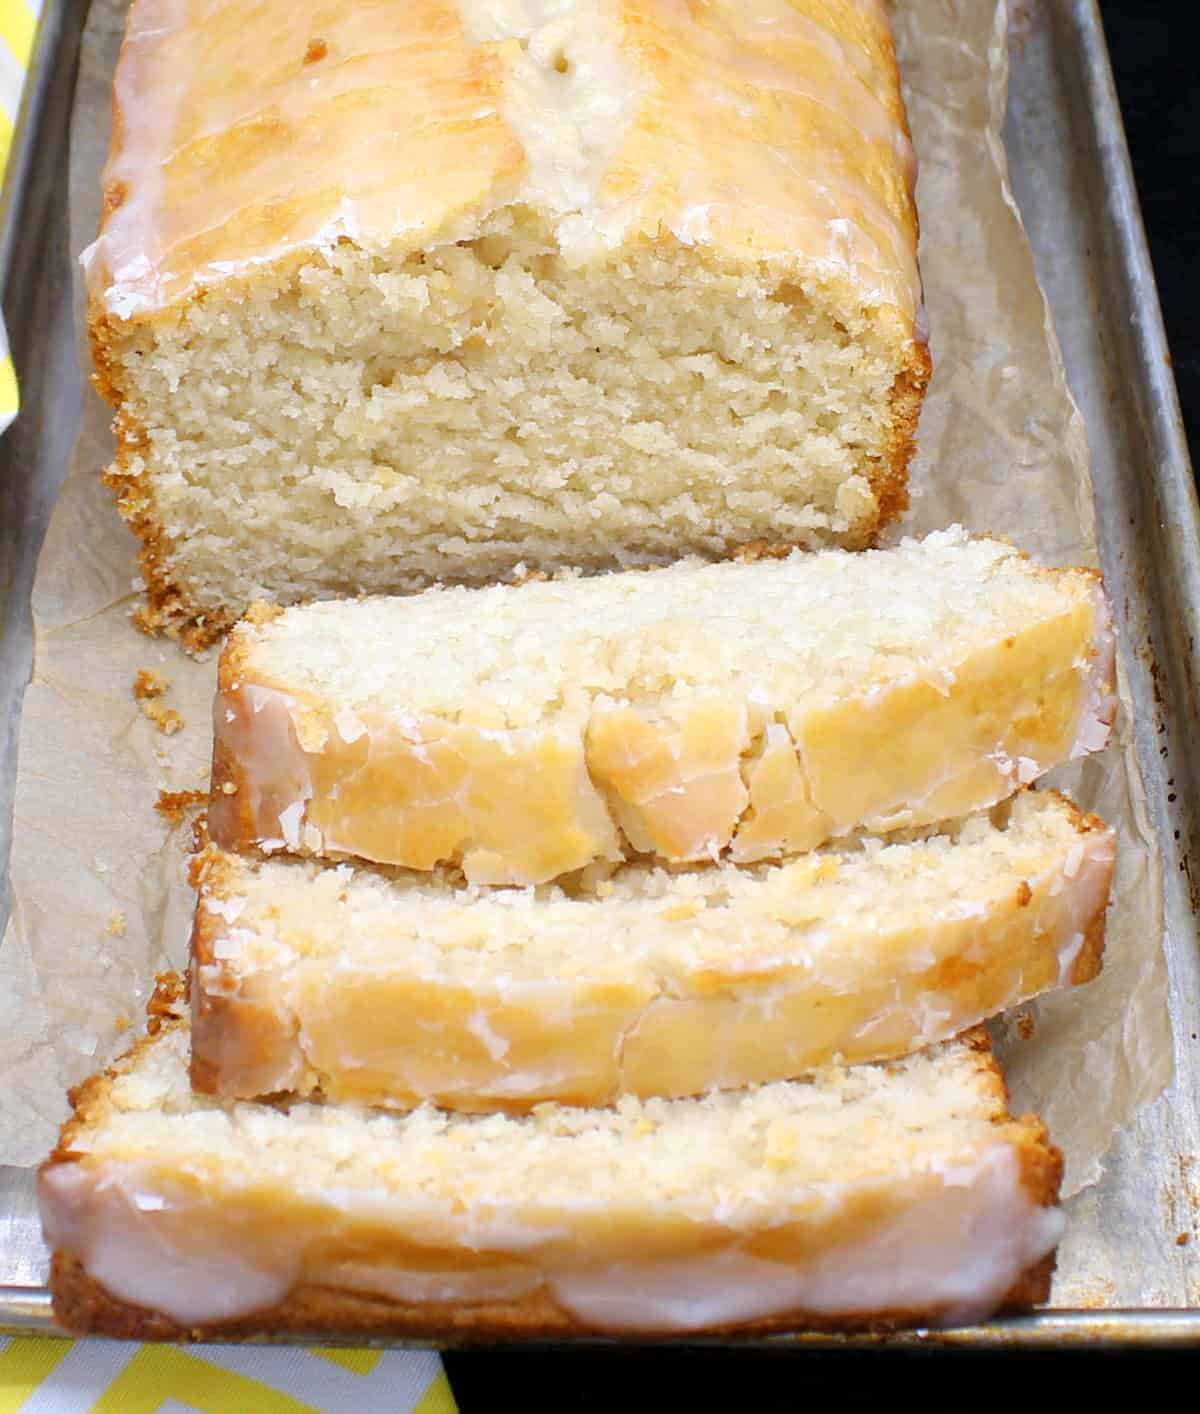 A sliced loaf of vegan lemon pound cake on a baking sheet.